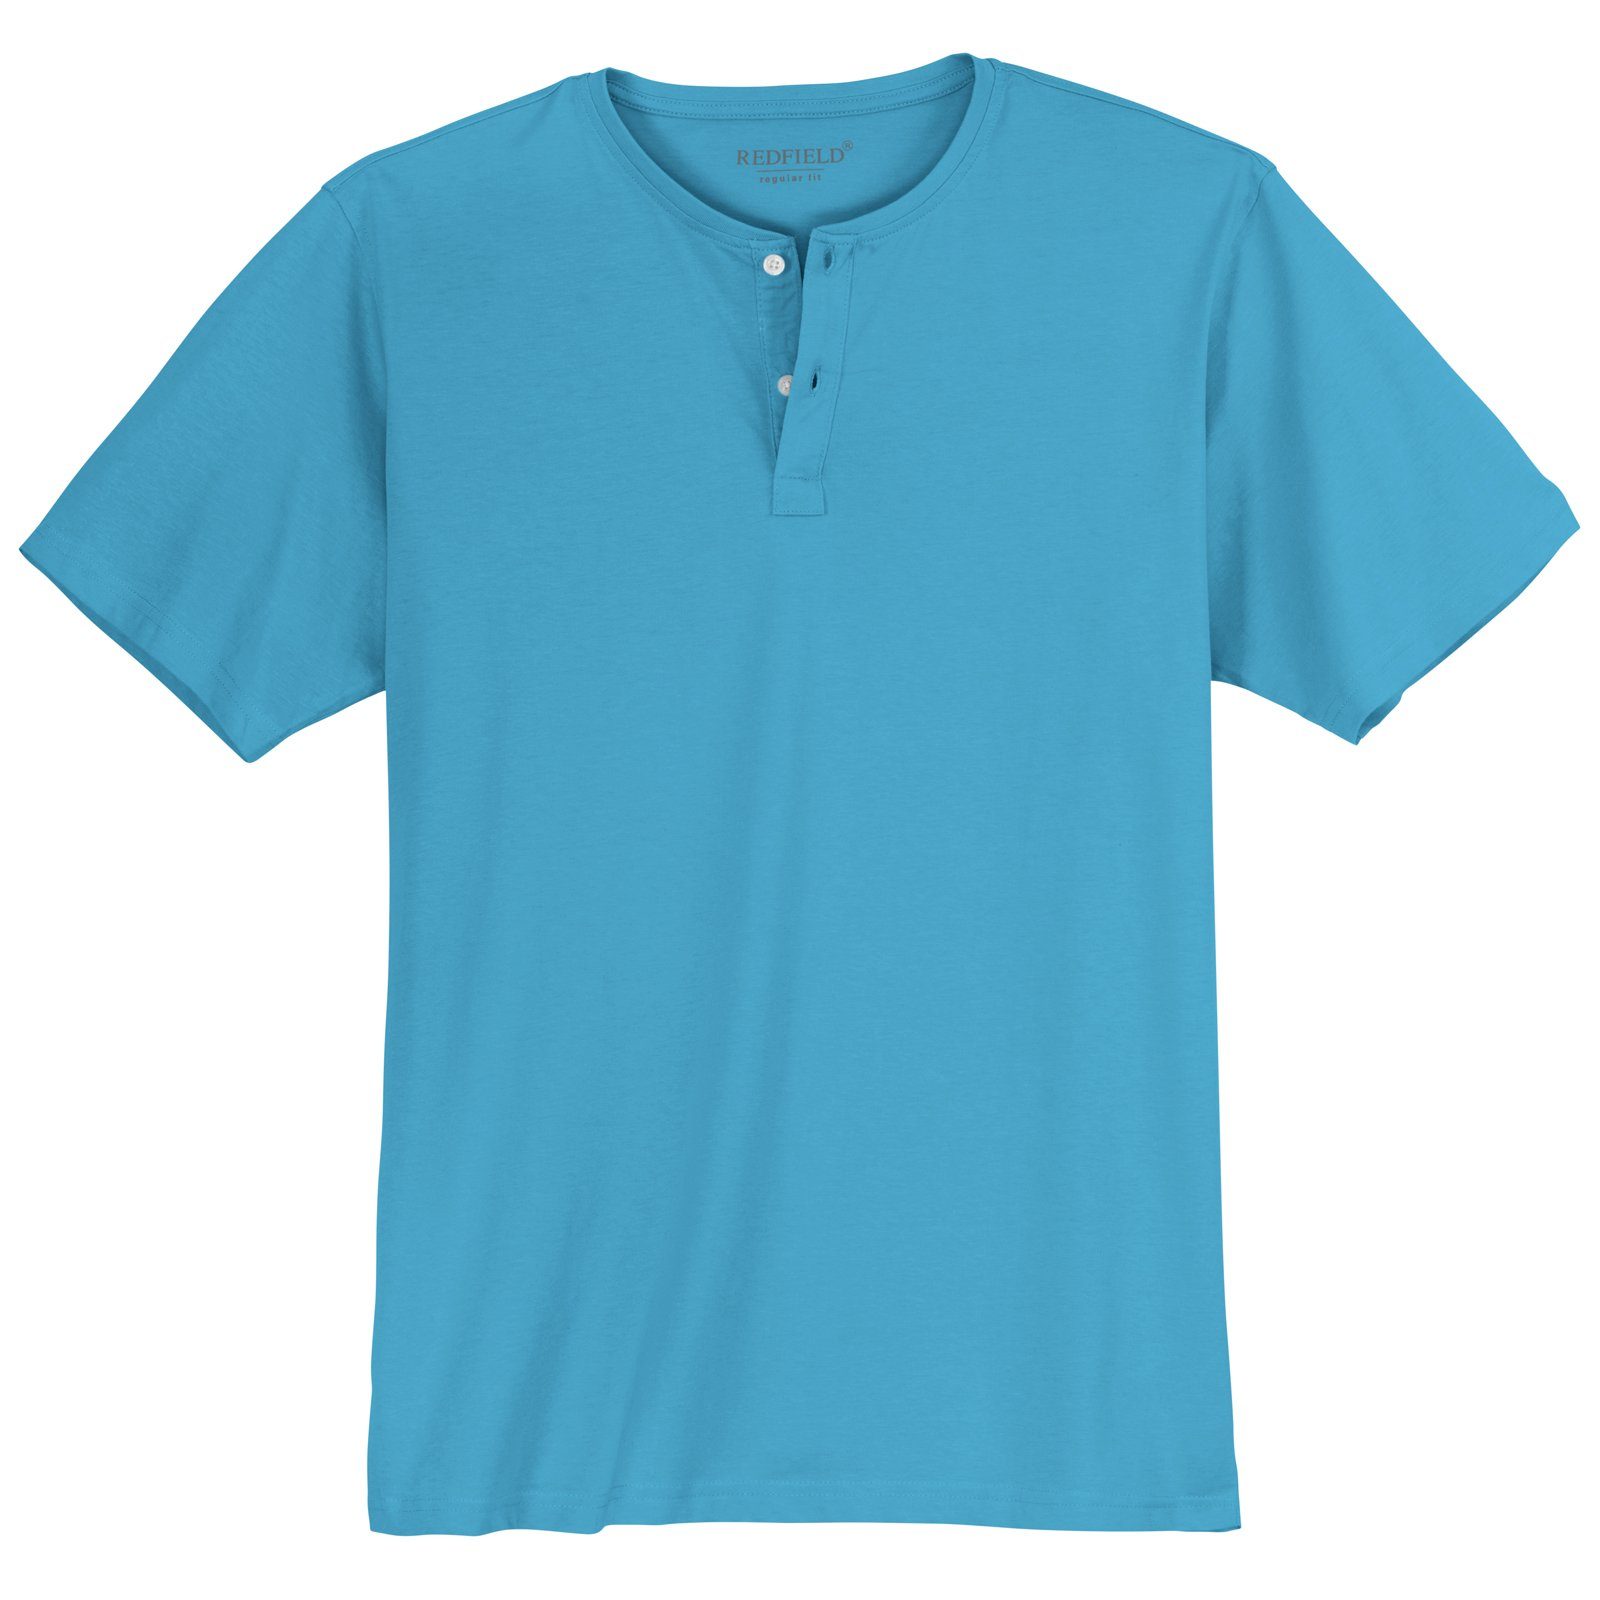 redfield Rundhalsshirt Große Größen Redfield Herren T-Shirt azurblau Knopfleiste